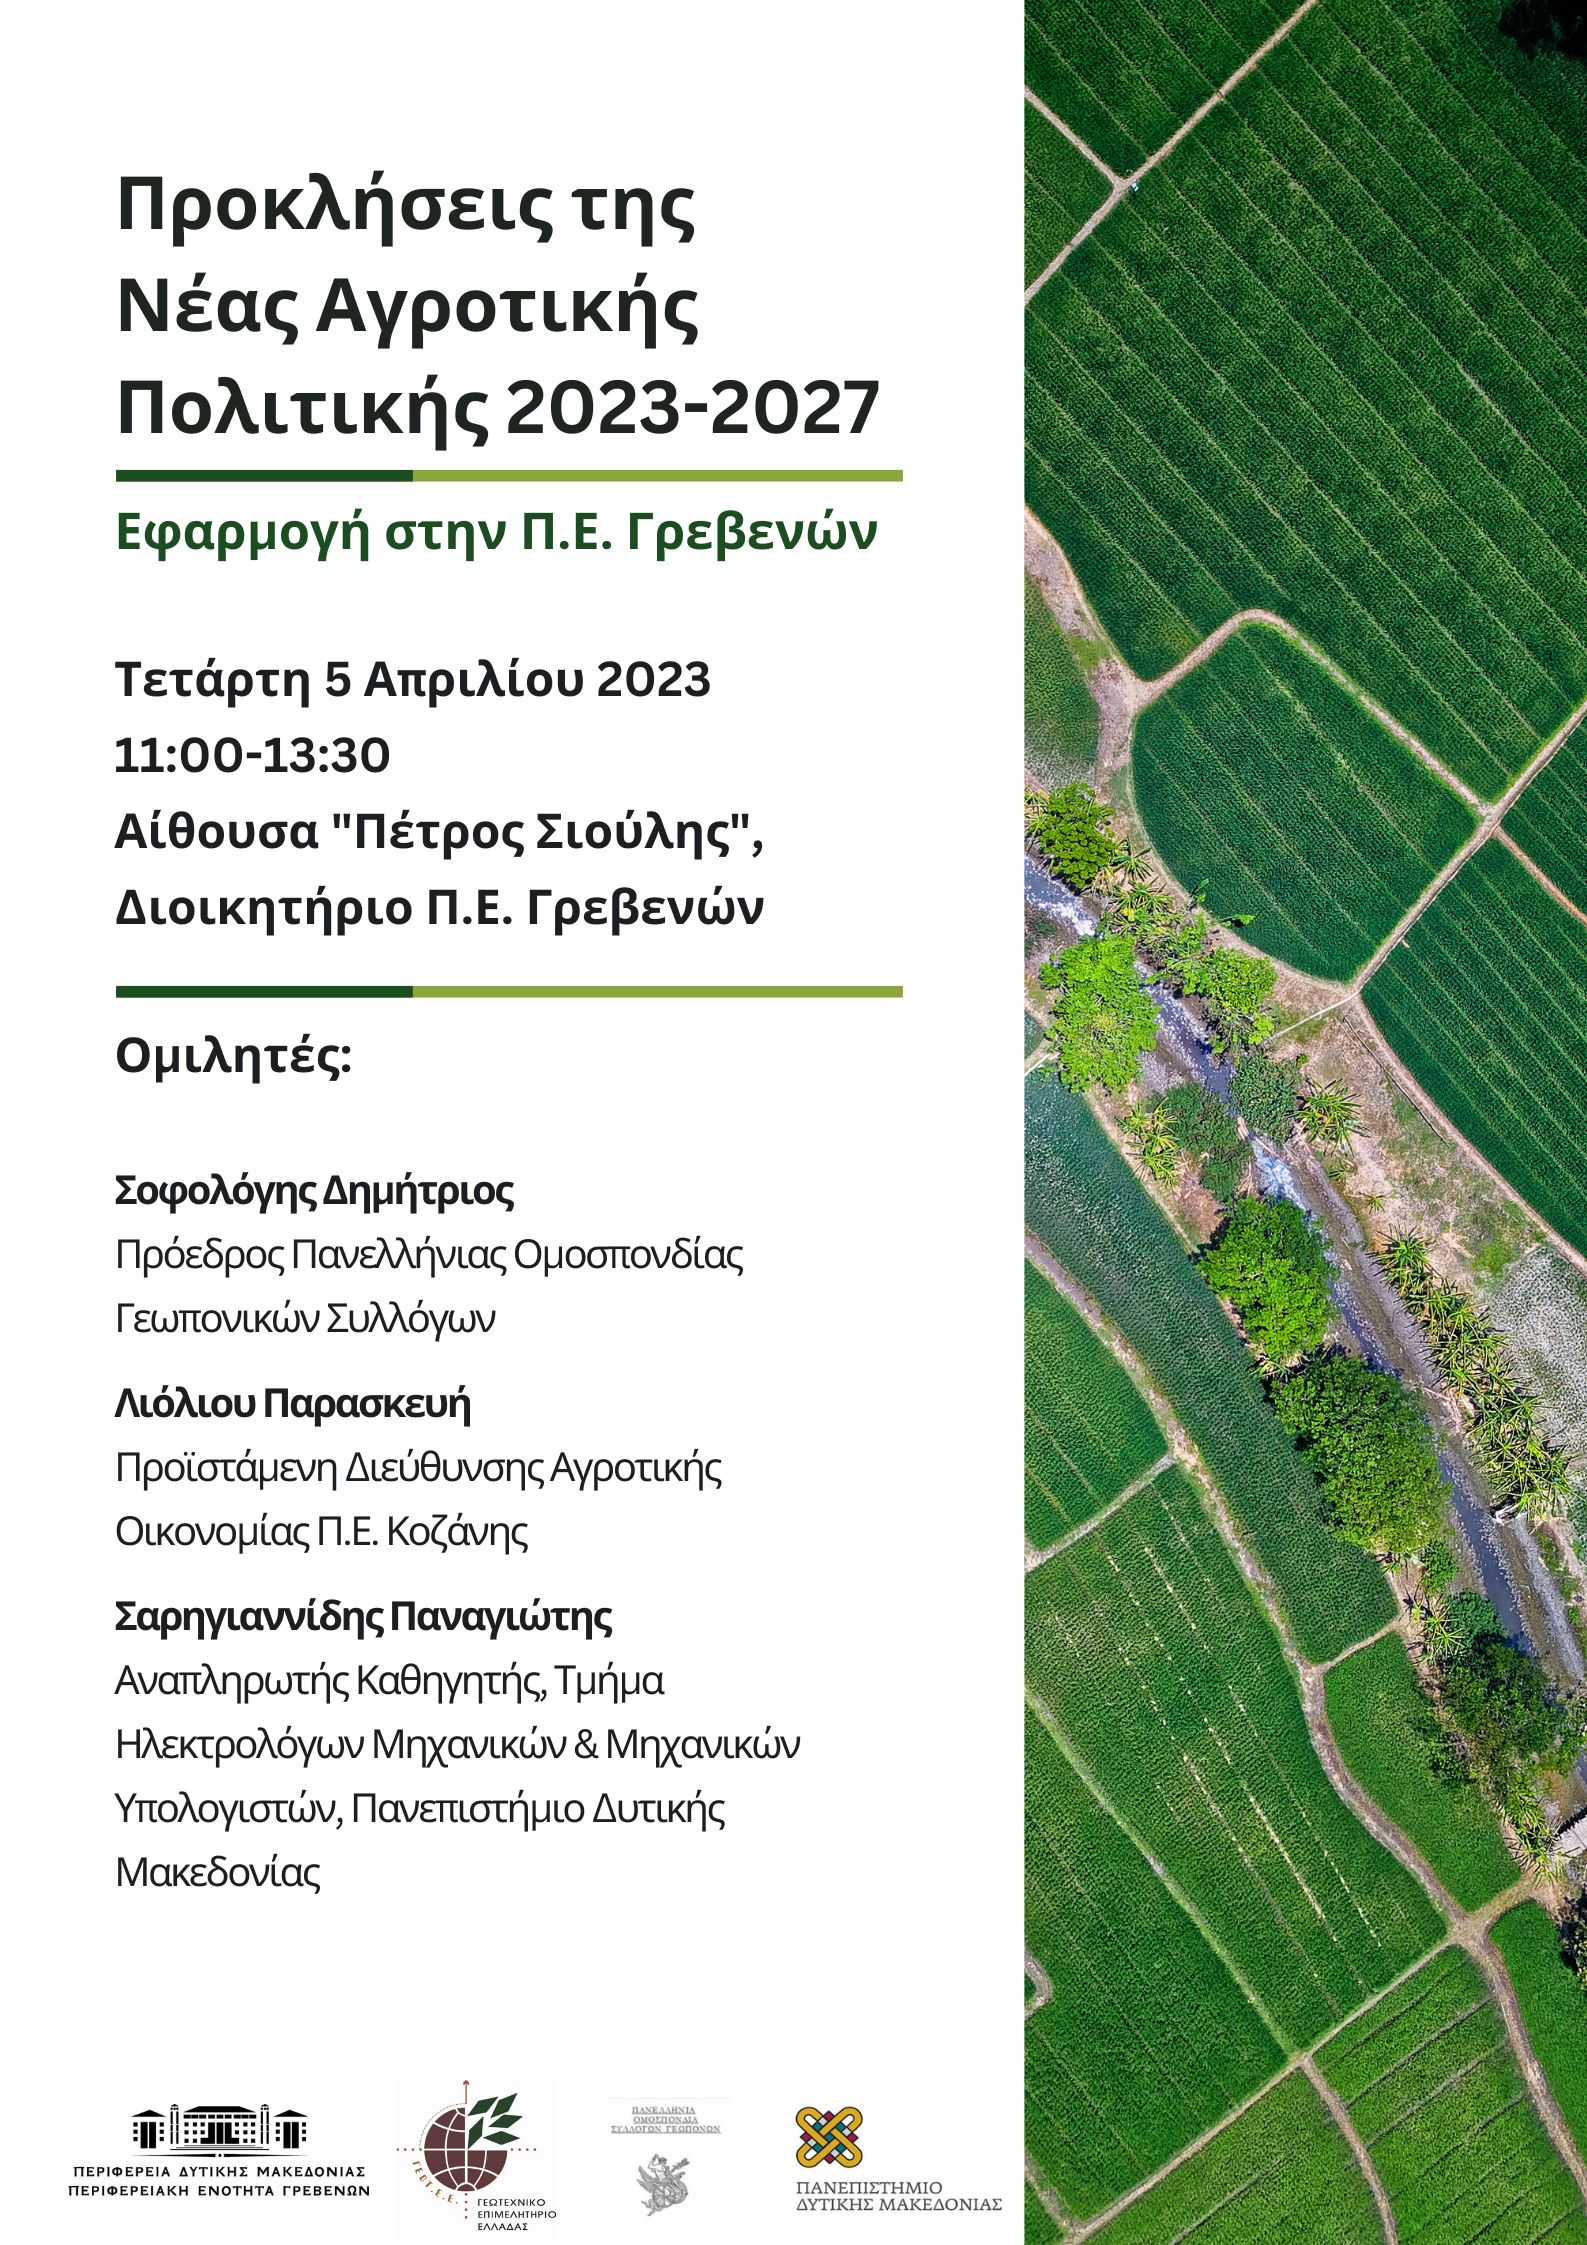 Προκλήσεις της Νέας Αγροτικής Πολιτικής 2023-2027, Εφαρμογή στην Π.Ε. Γρεβενών